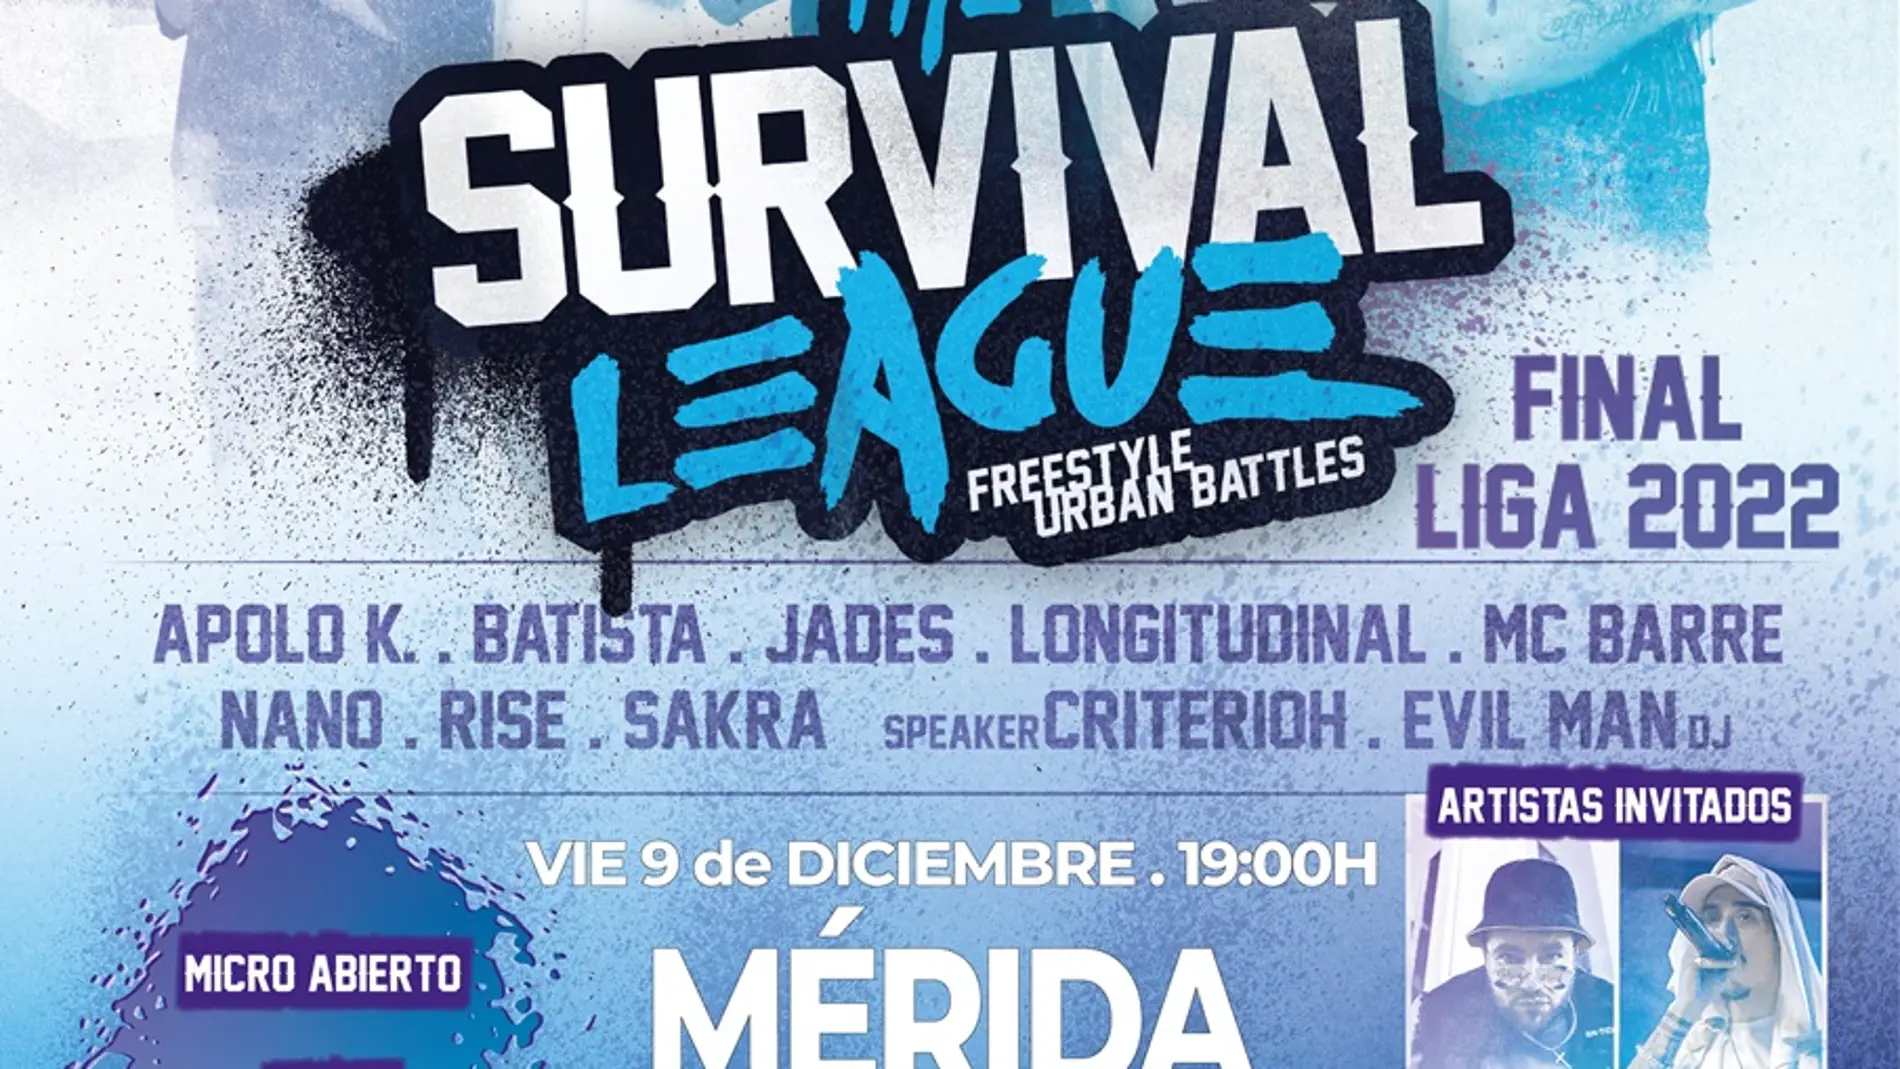 The Survival League celebra su gran final en Mérida y ofrecerá también un “micro abierto” para los talentos locales